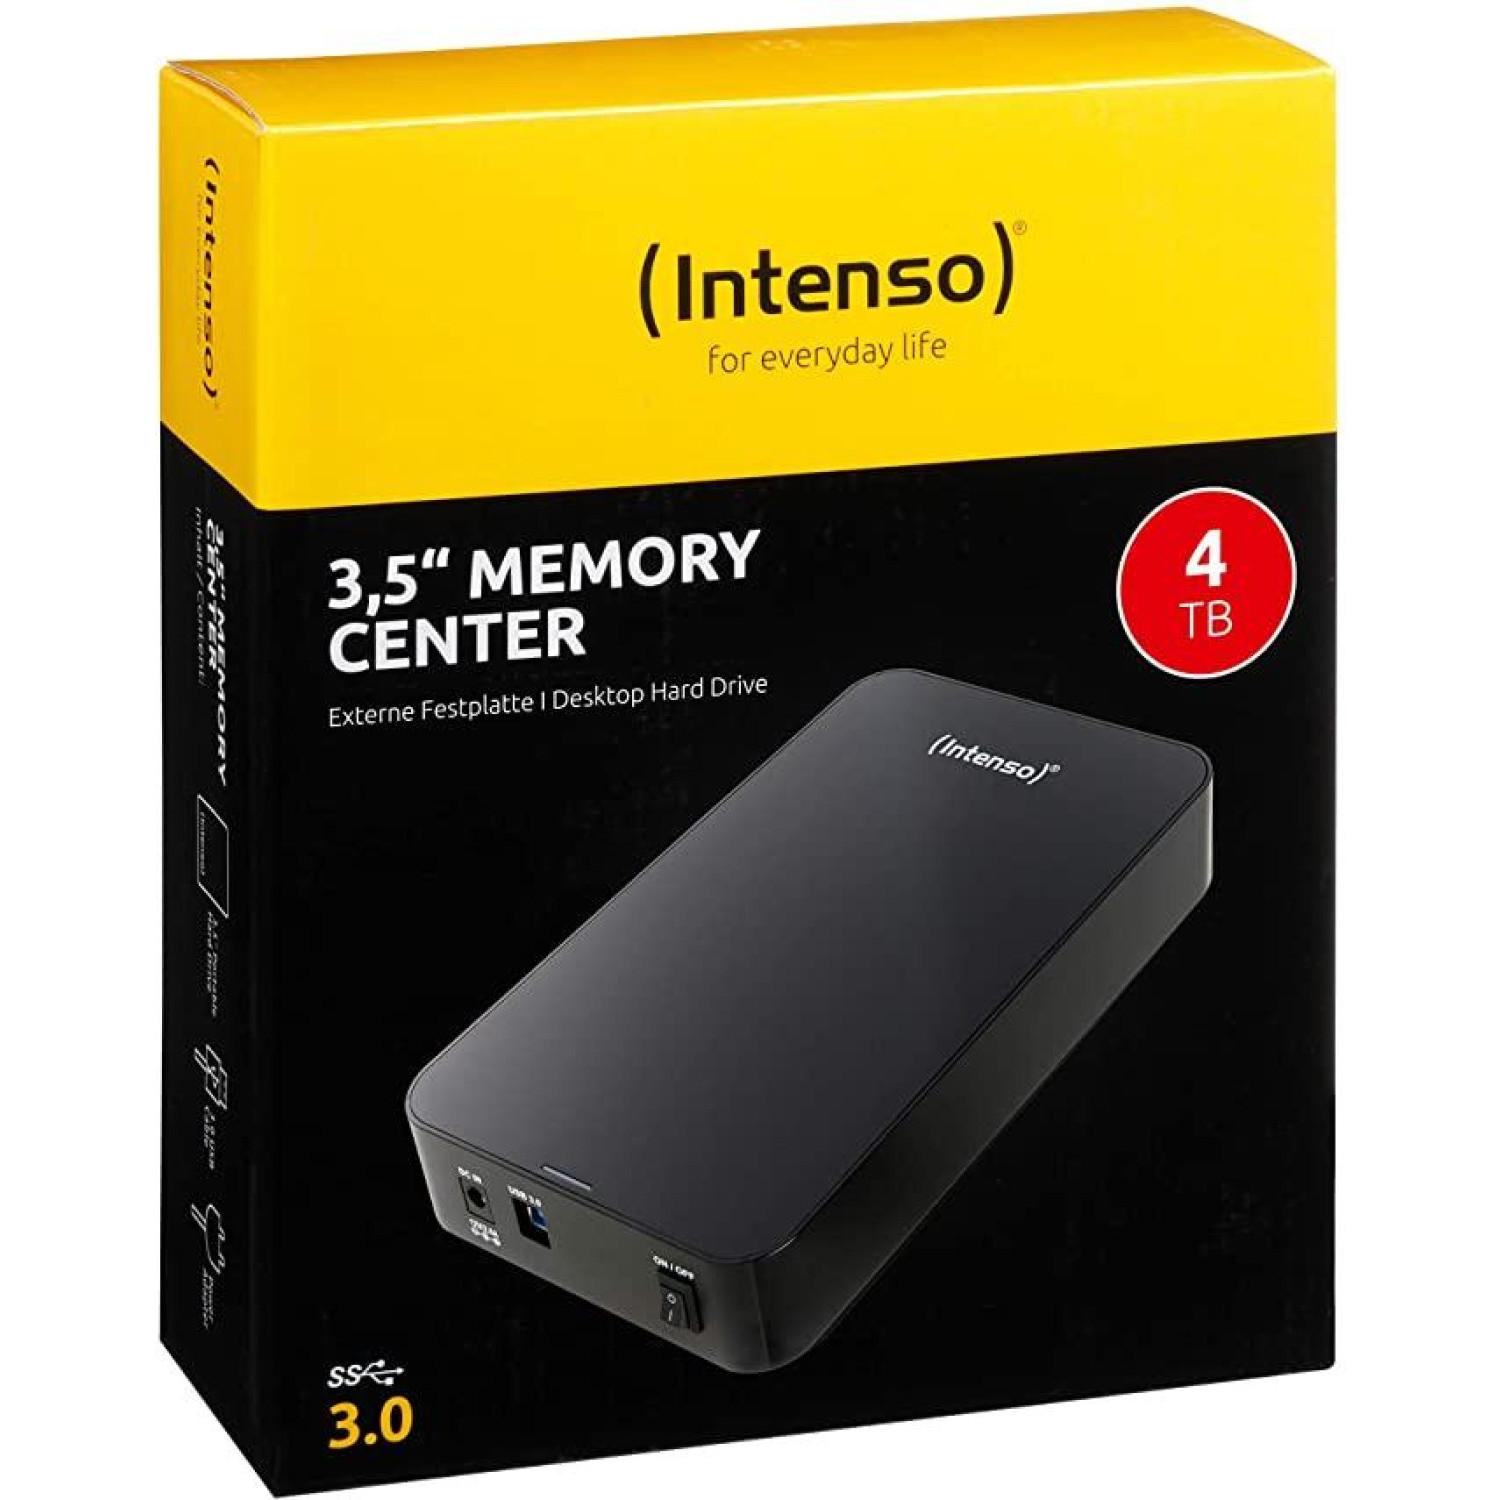 Външен хард диск Intenso, 3.5", 4TB, USB3.0